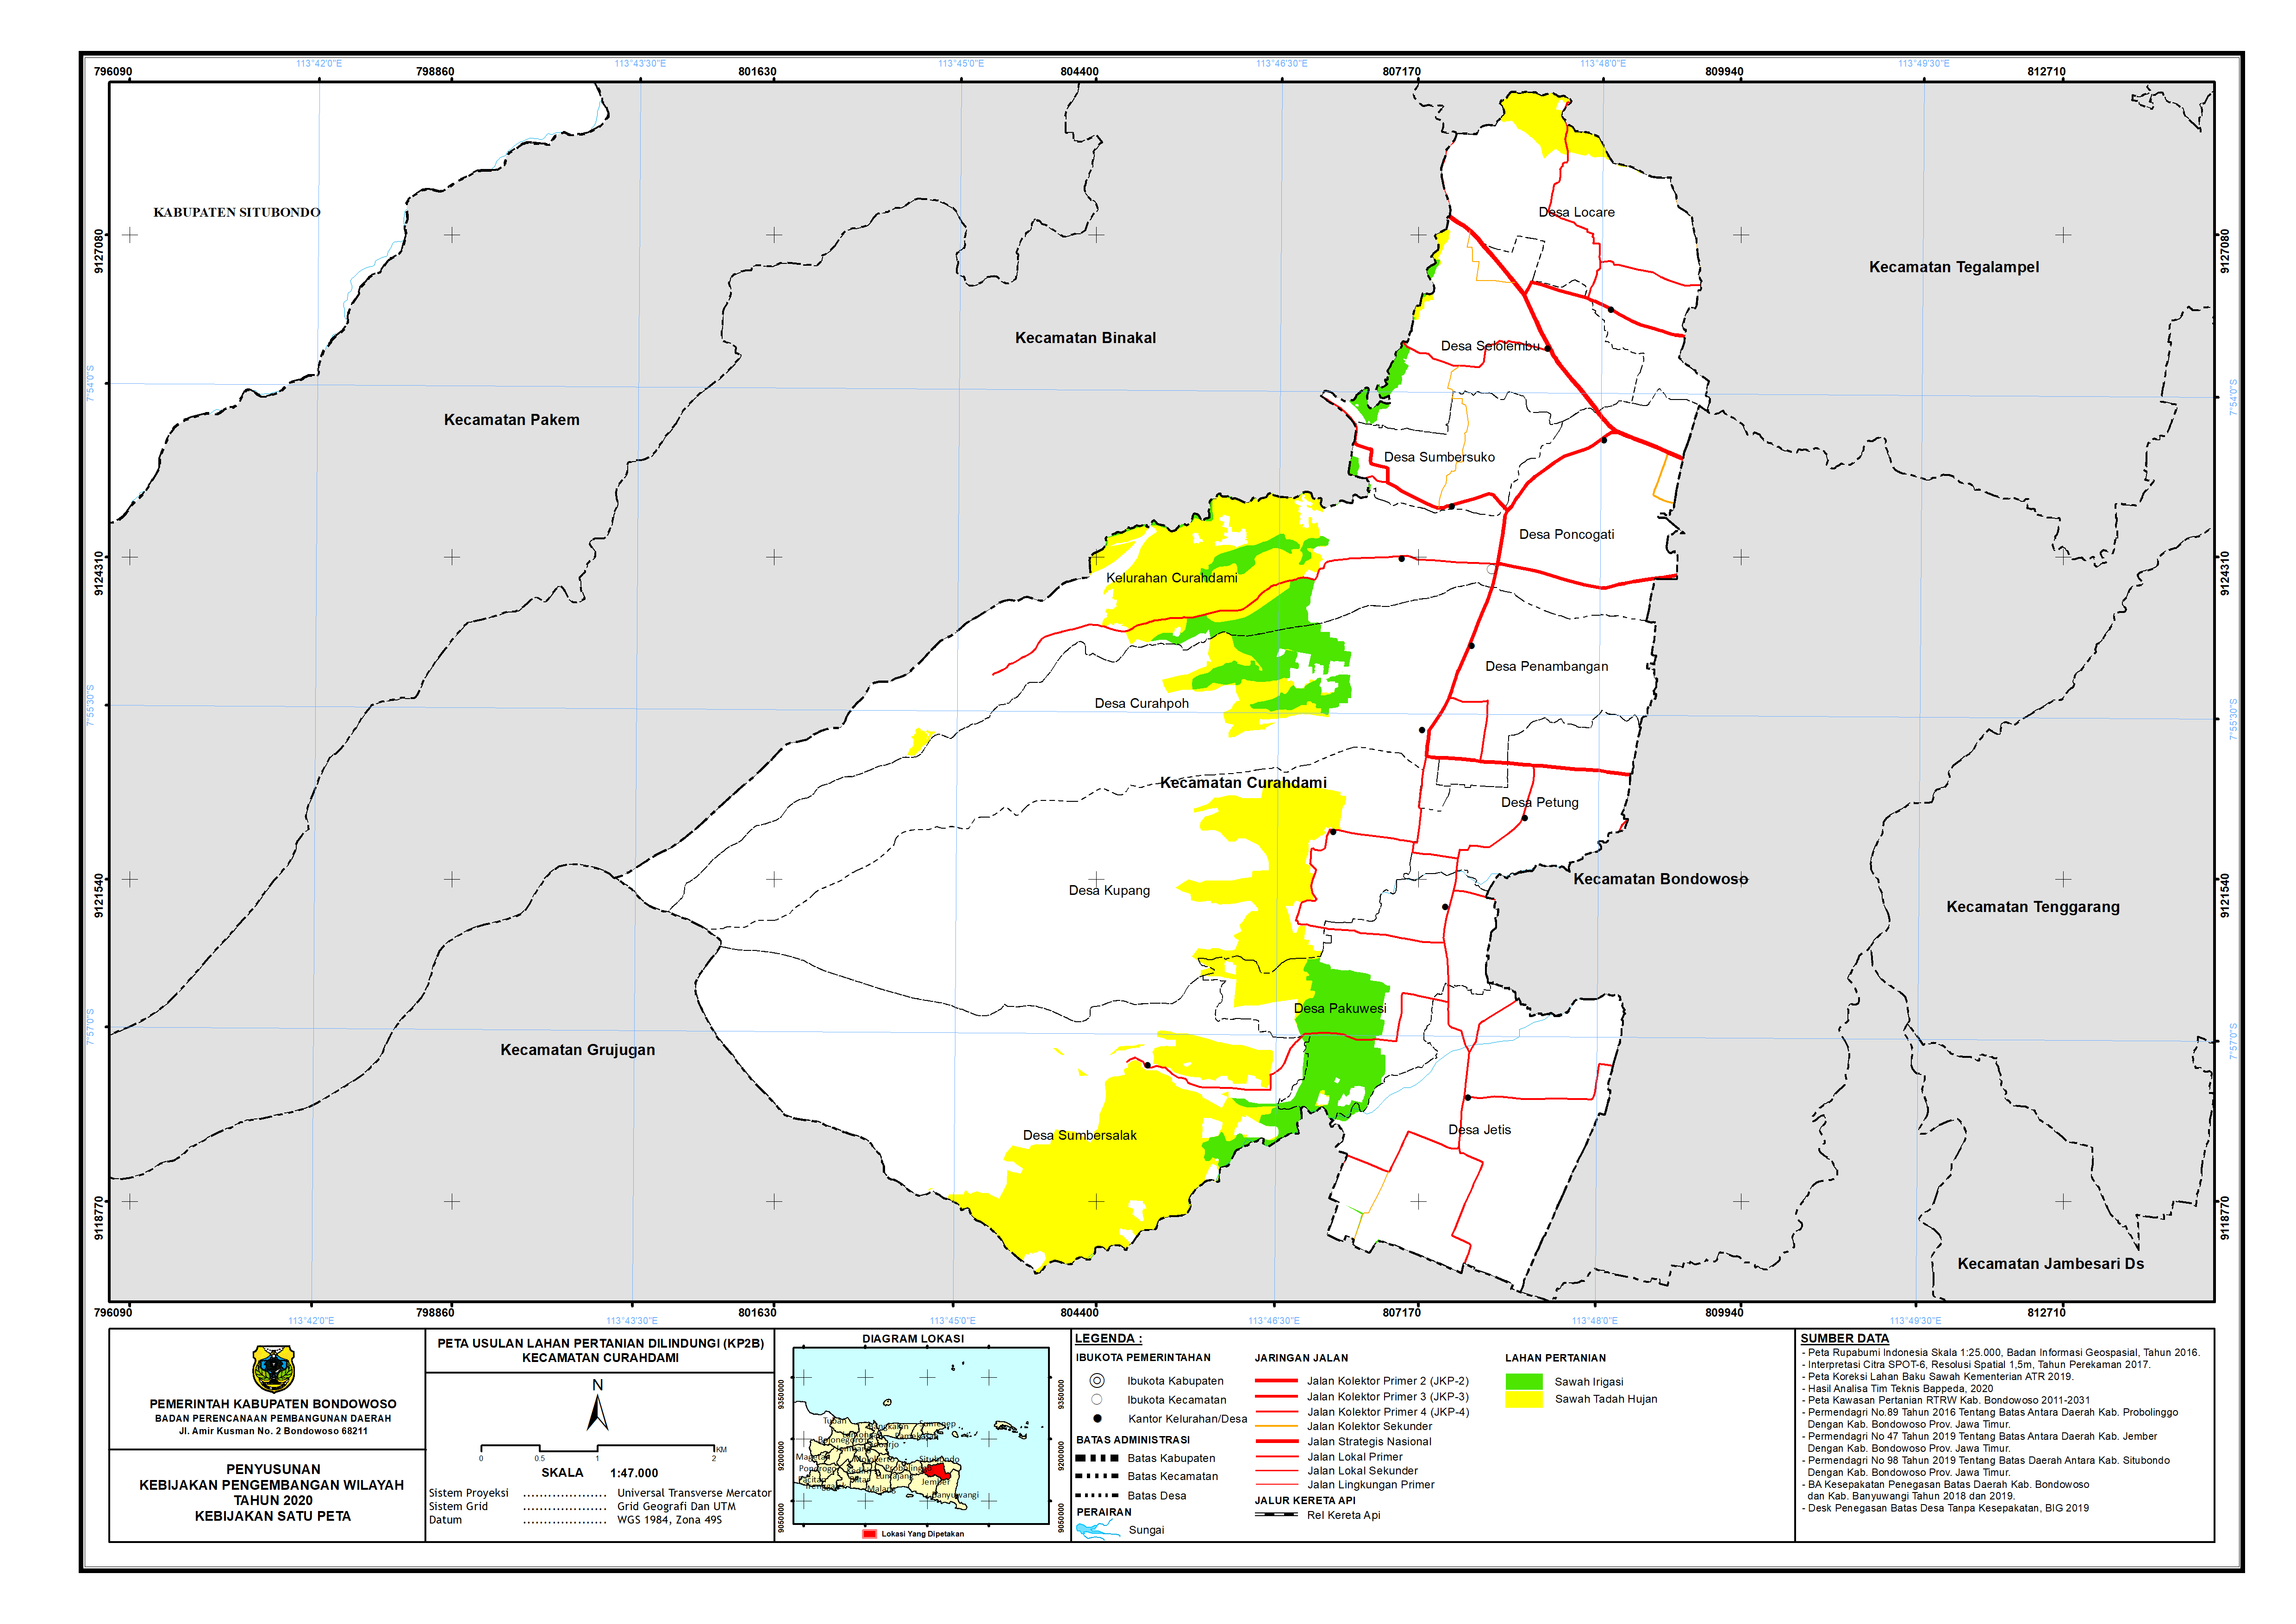 Peta Usulan Lahan Pertanian  Dilindungi Kecamatan Curahdami.png